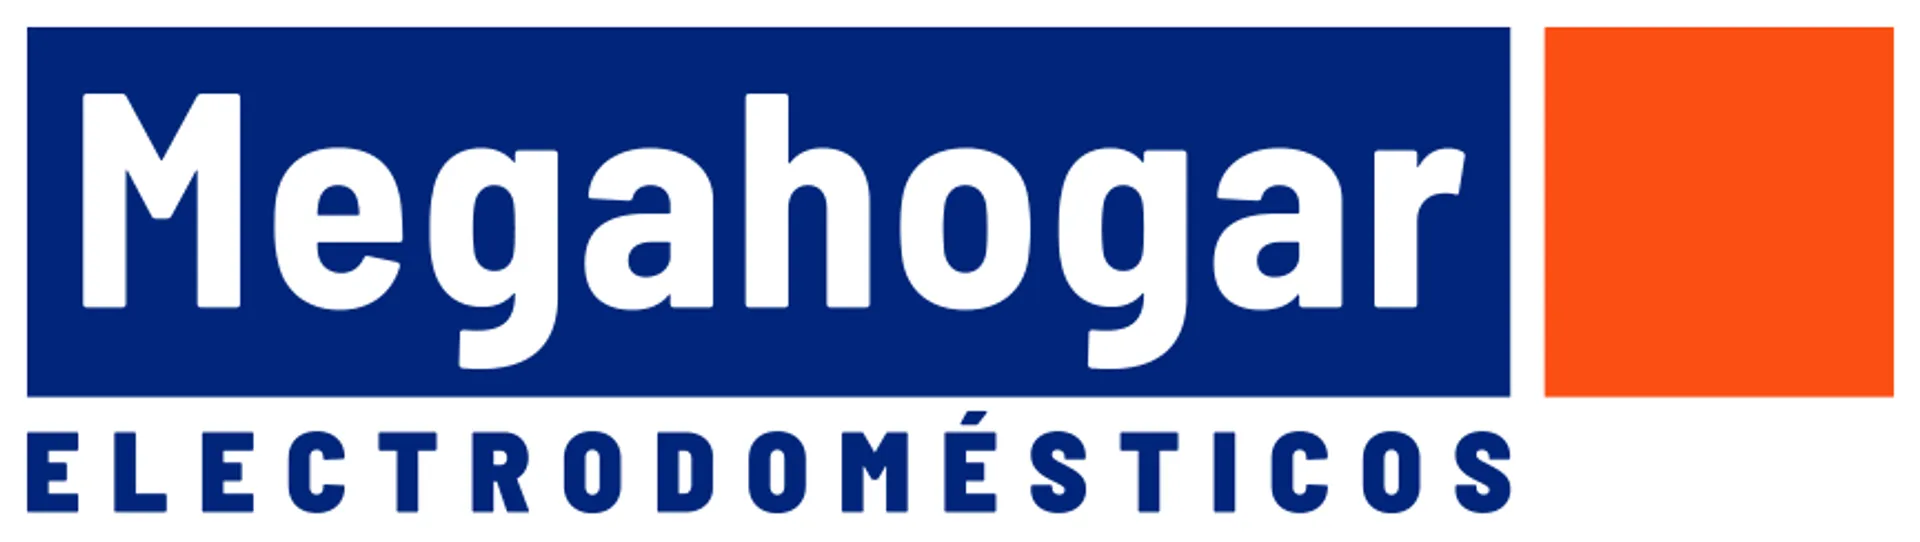 MEGAHOGAR logo